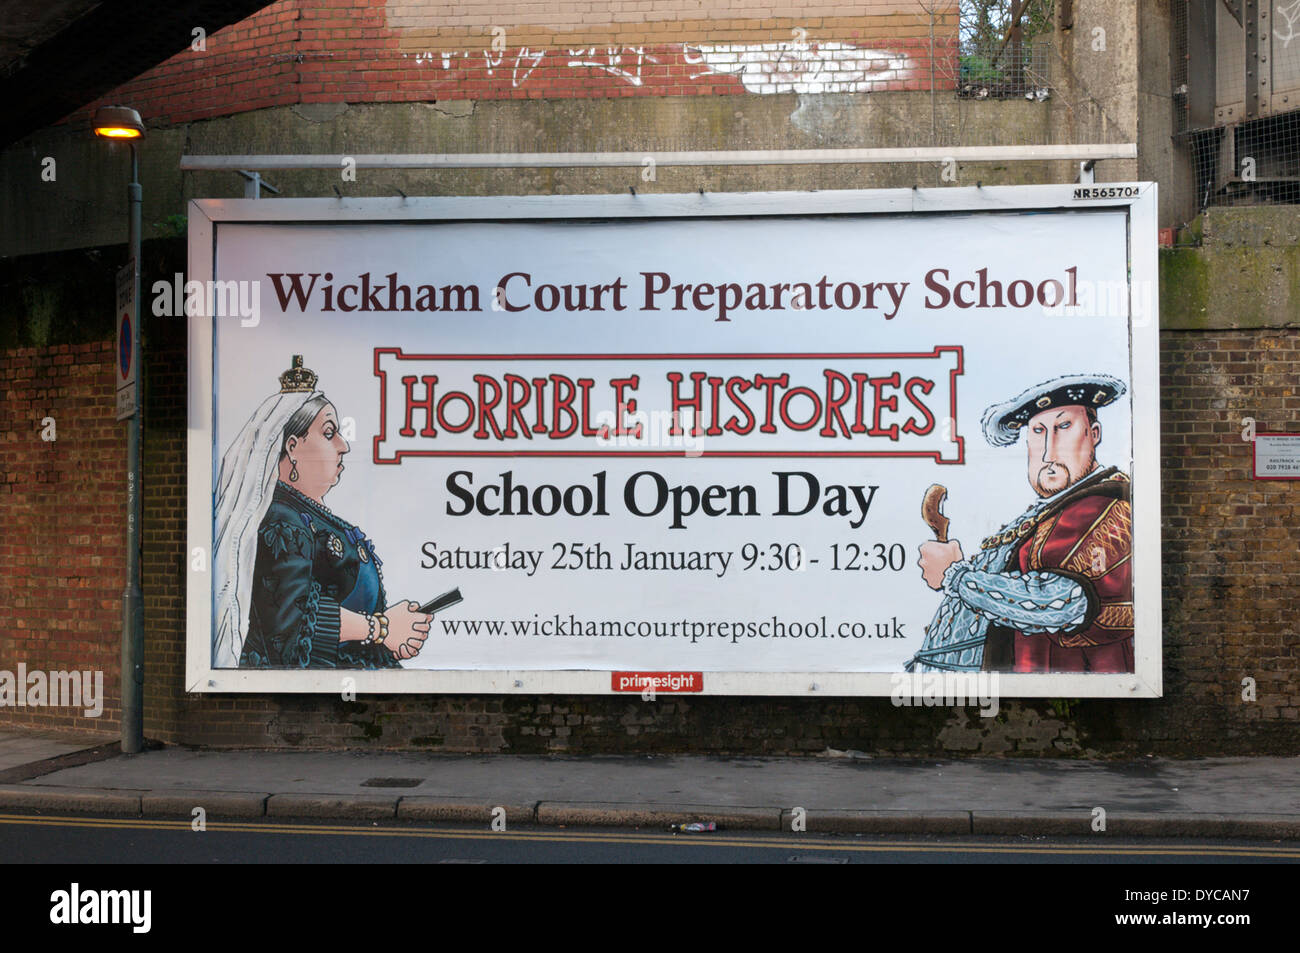 Des histoires horribles de l'École affiche annonçant une journée portes ouvertes à l'école préparatoire de la Cour Wickham. Banque D'Images